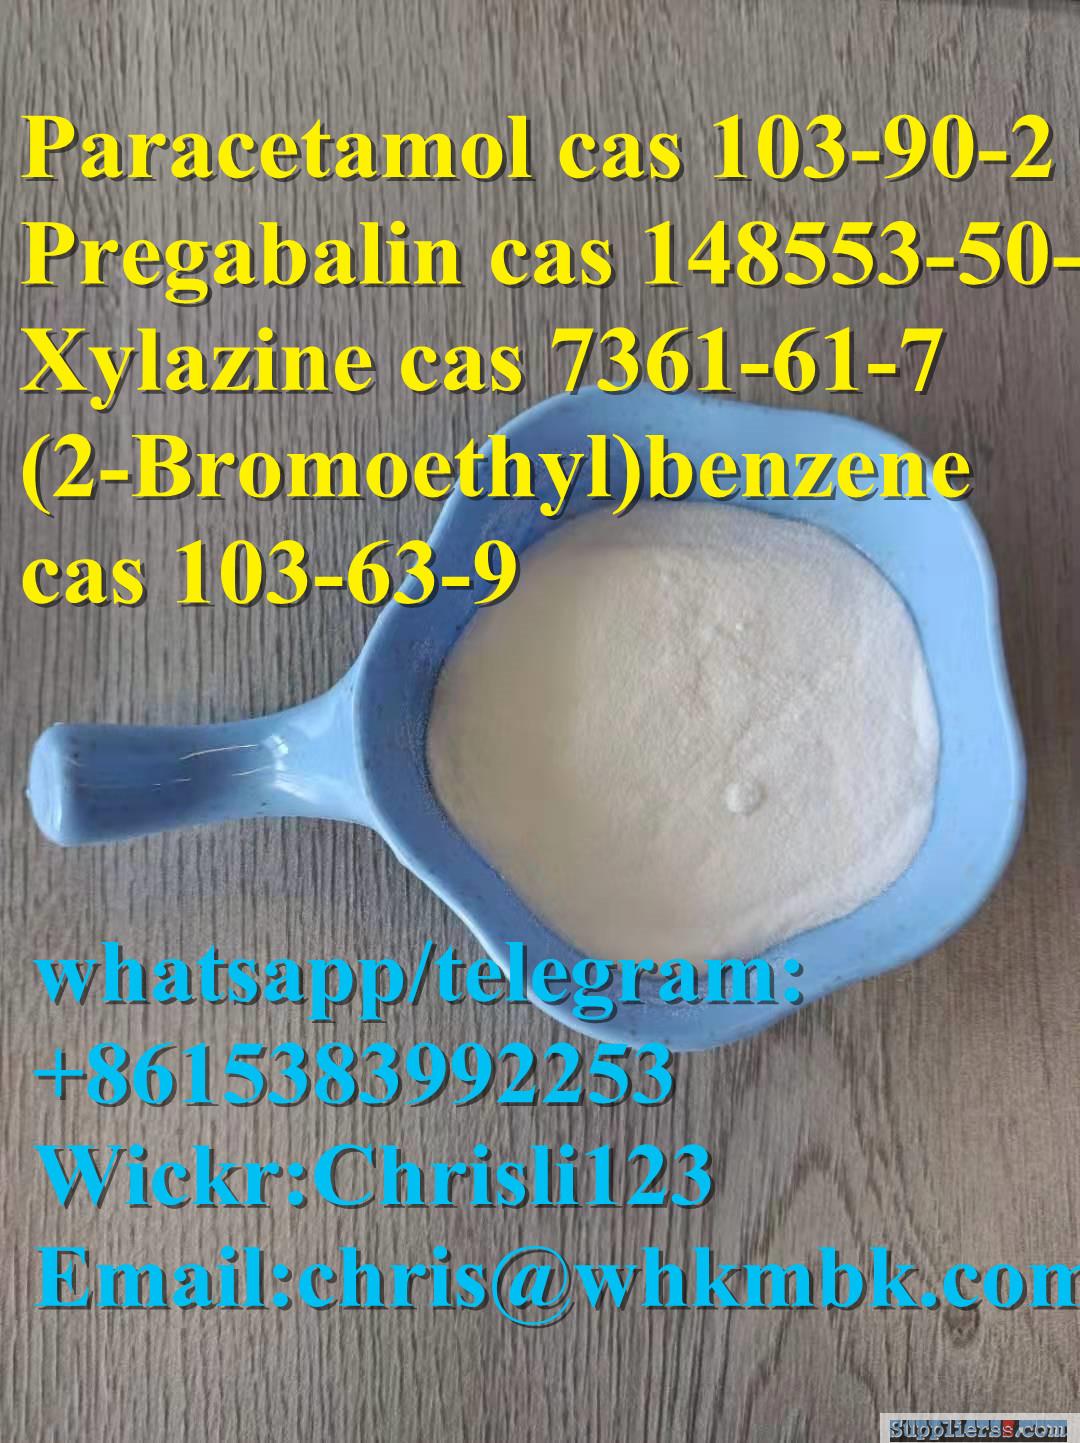 Paracetamol cas 103-90-2 Pregabalin cas 148553-50-8 Xylazine cas 7361-61-7 cas 103-63-9/wh